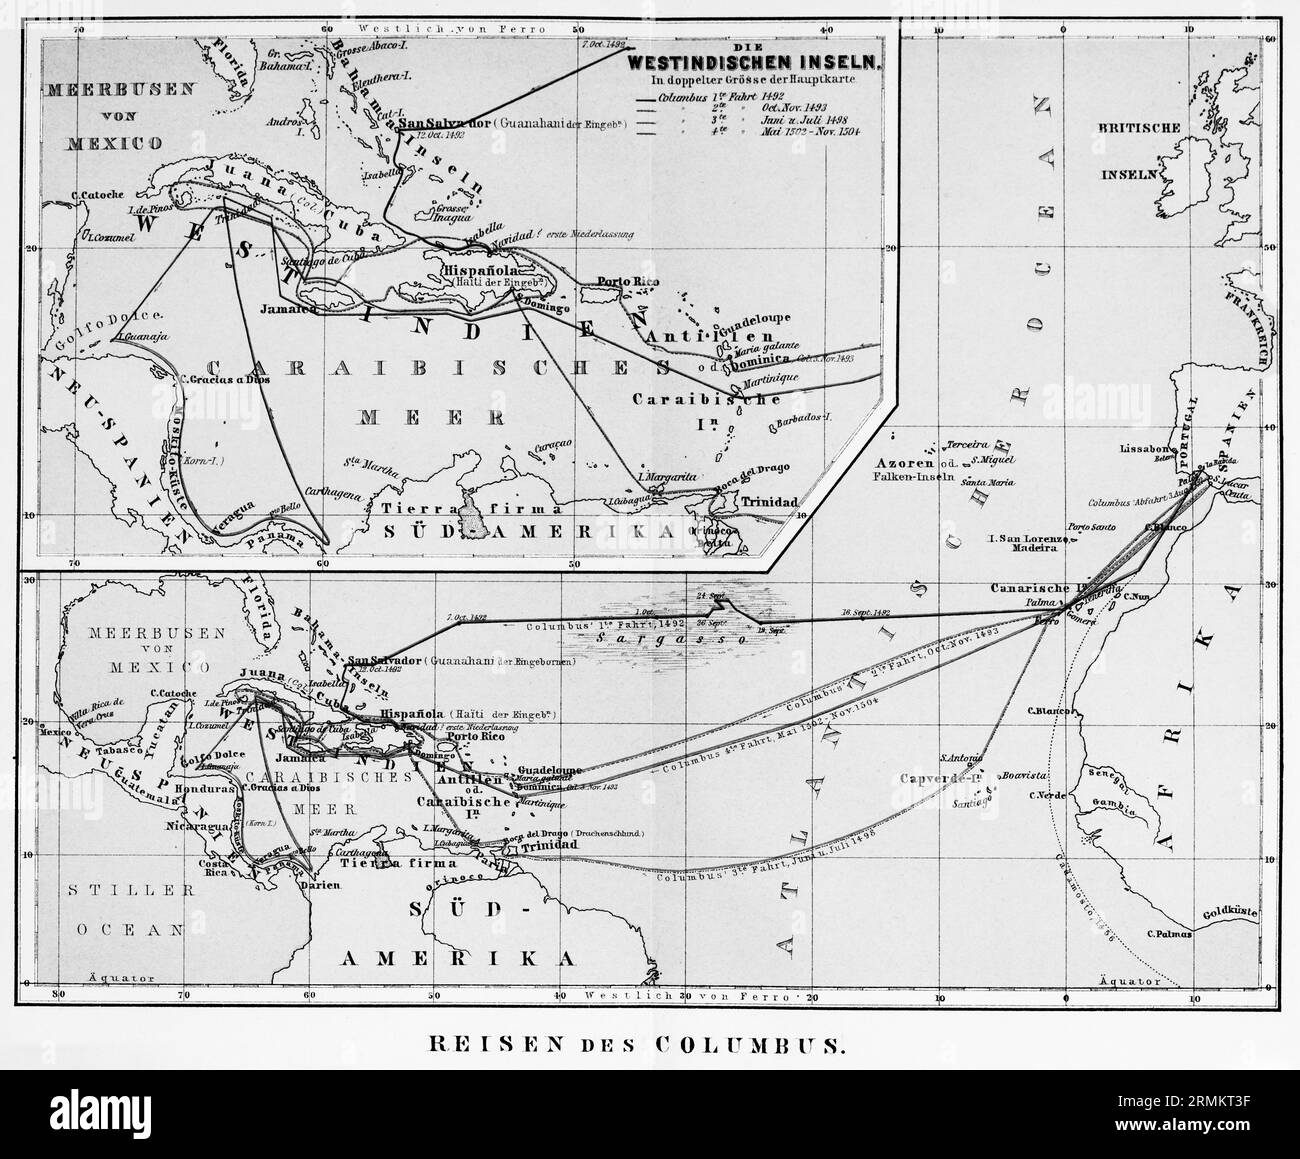 Voyages de Christophe Colomb (c. 1451-1506), découvreur de l'Amérique, des Antilles, de la mer des Caraïbes, de l'océan Atlantique, routes maritimes, Amérique du Sud Banque D'Images